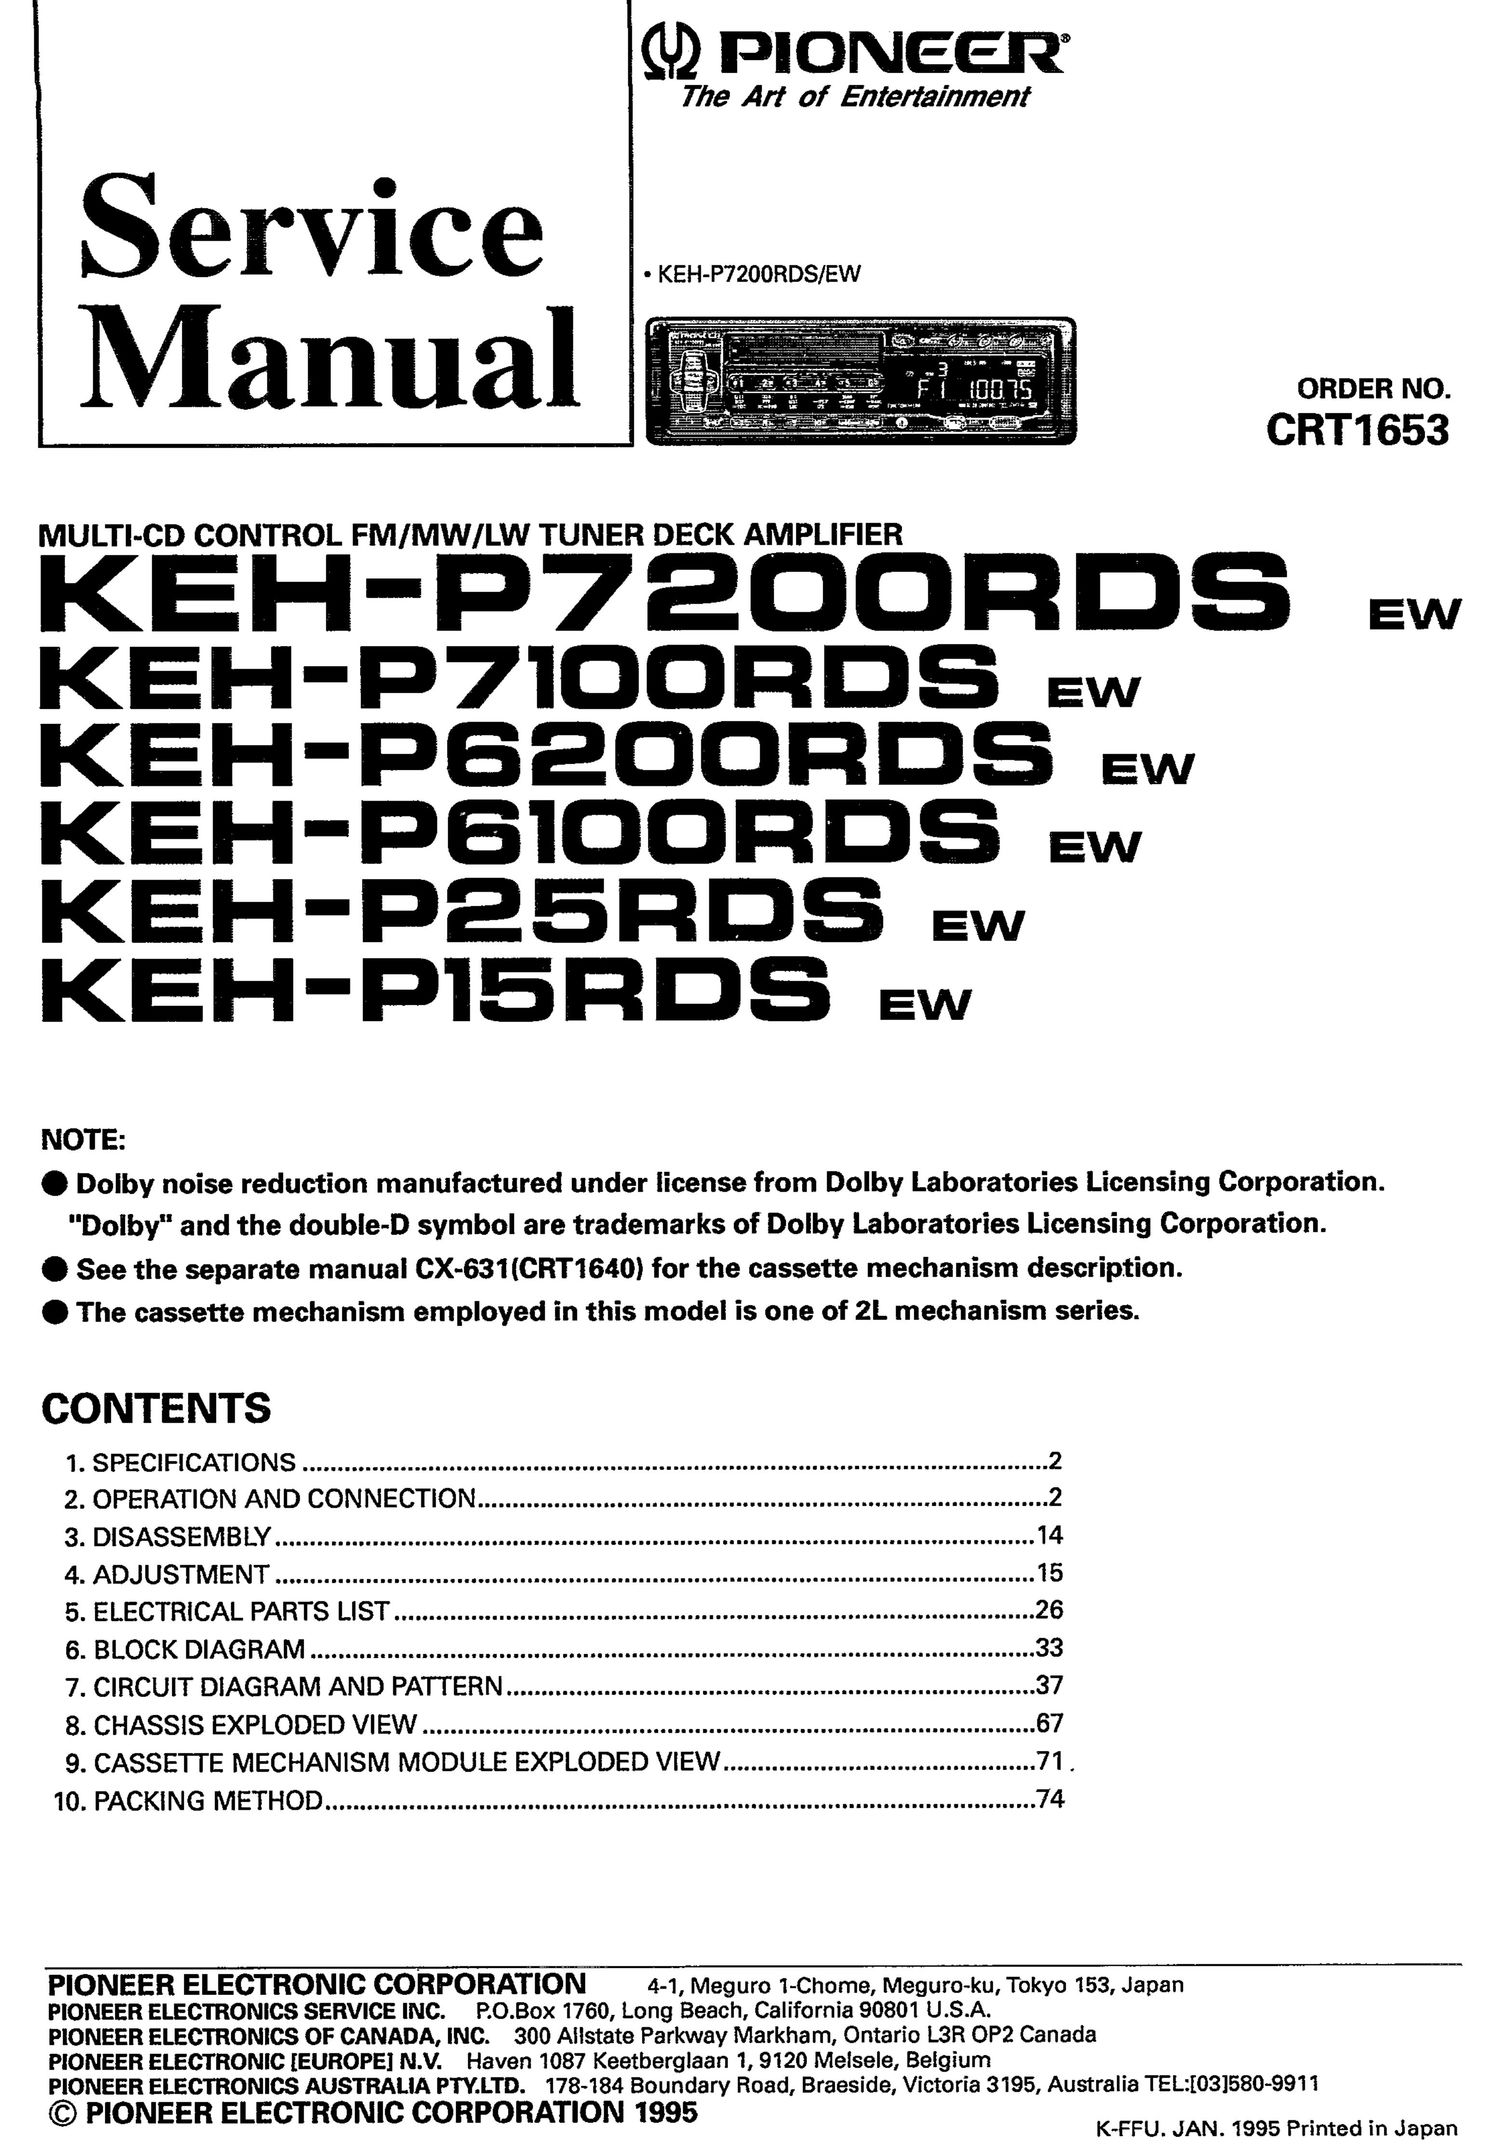 pioneer kehp 7200 rds service manual